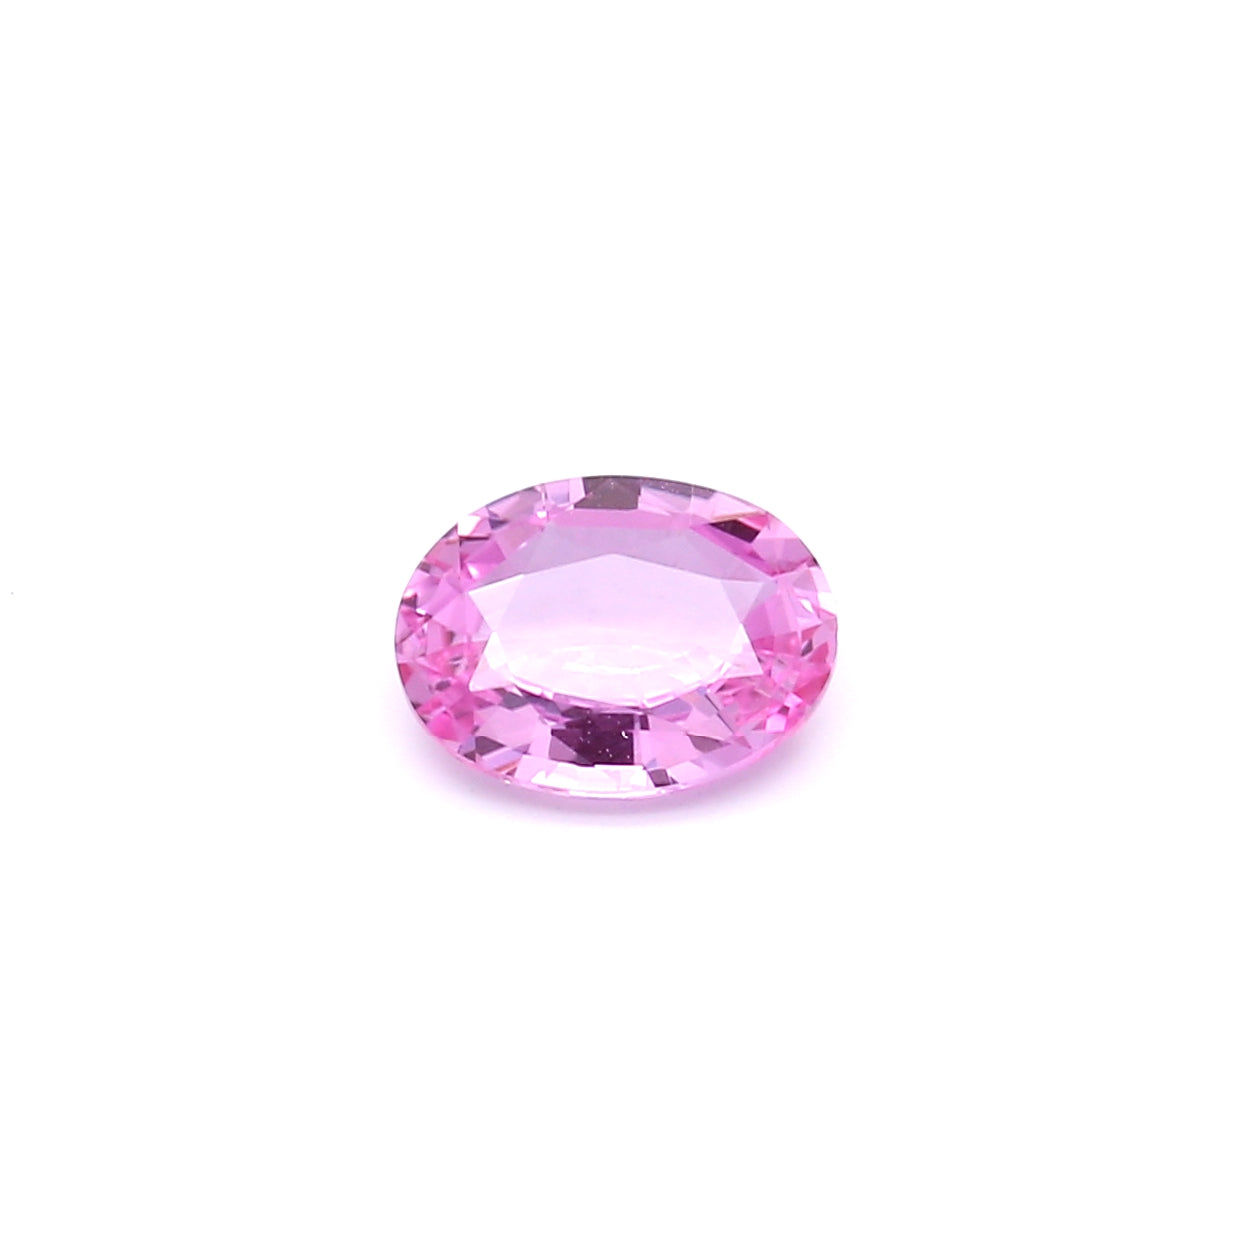 1.30ct Pink, Oval Sapphire, No Heat, Sri Lanka - 7.80 x 5.84 x 3.04mm